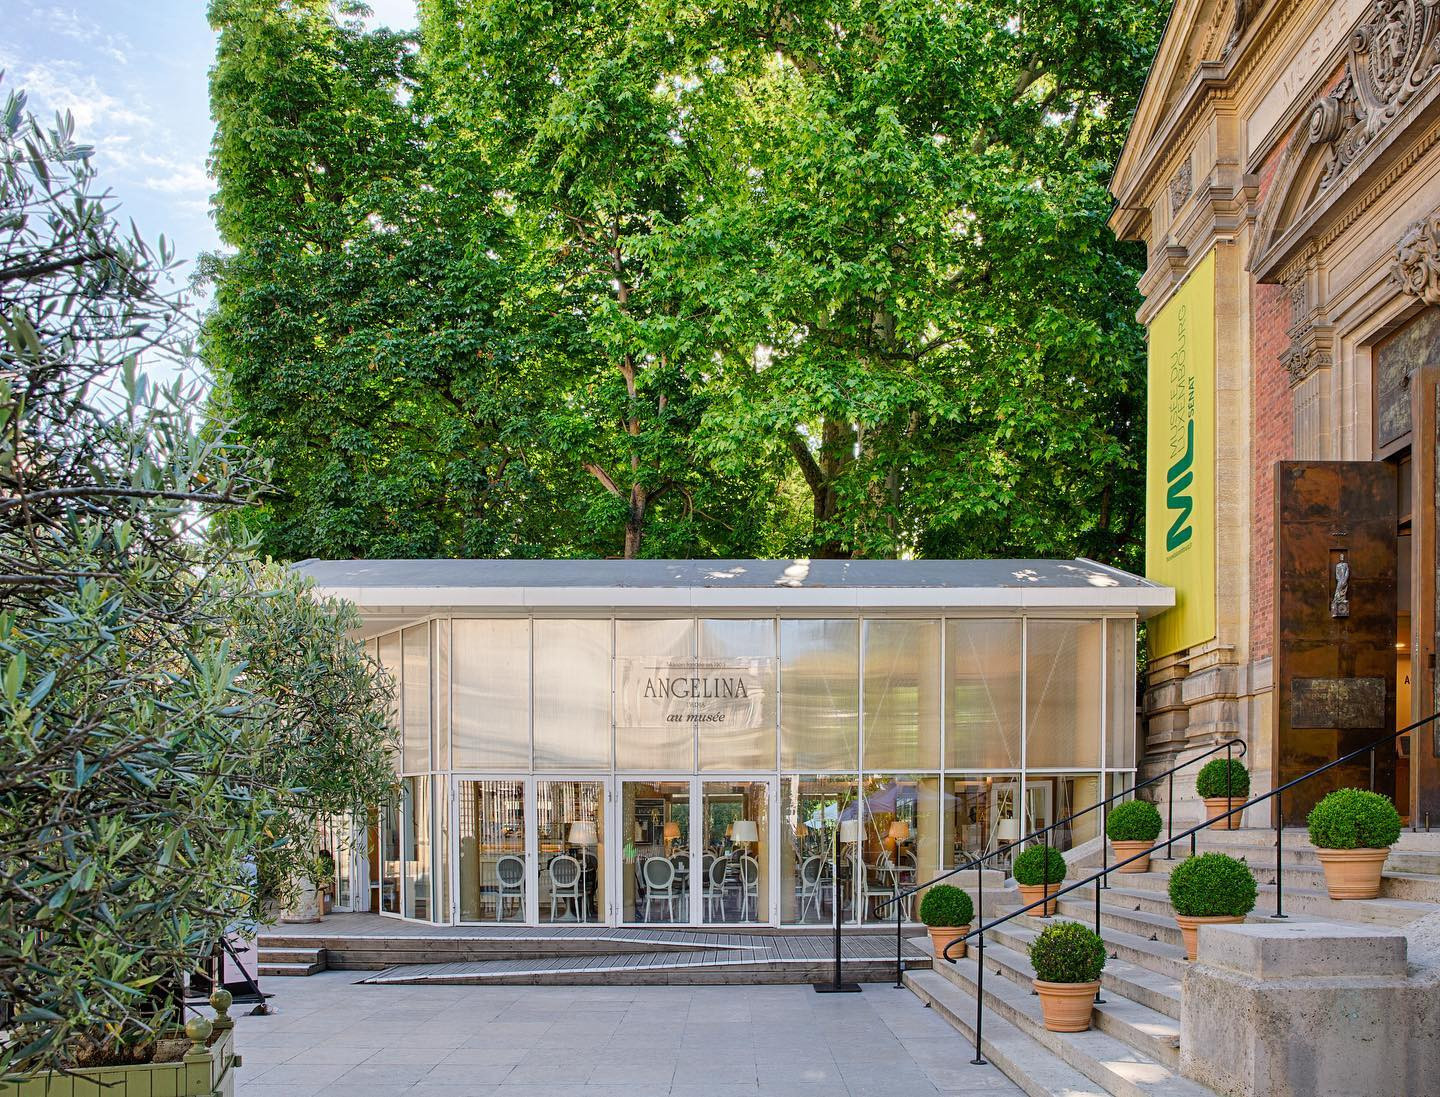 Louis Vuitton - Hotel Luxembourg parc Paris ****, OFFICIAL SITE